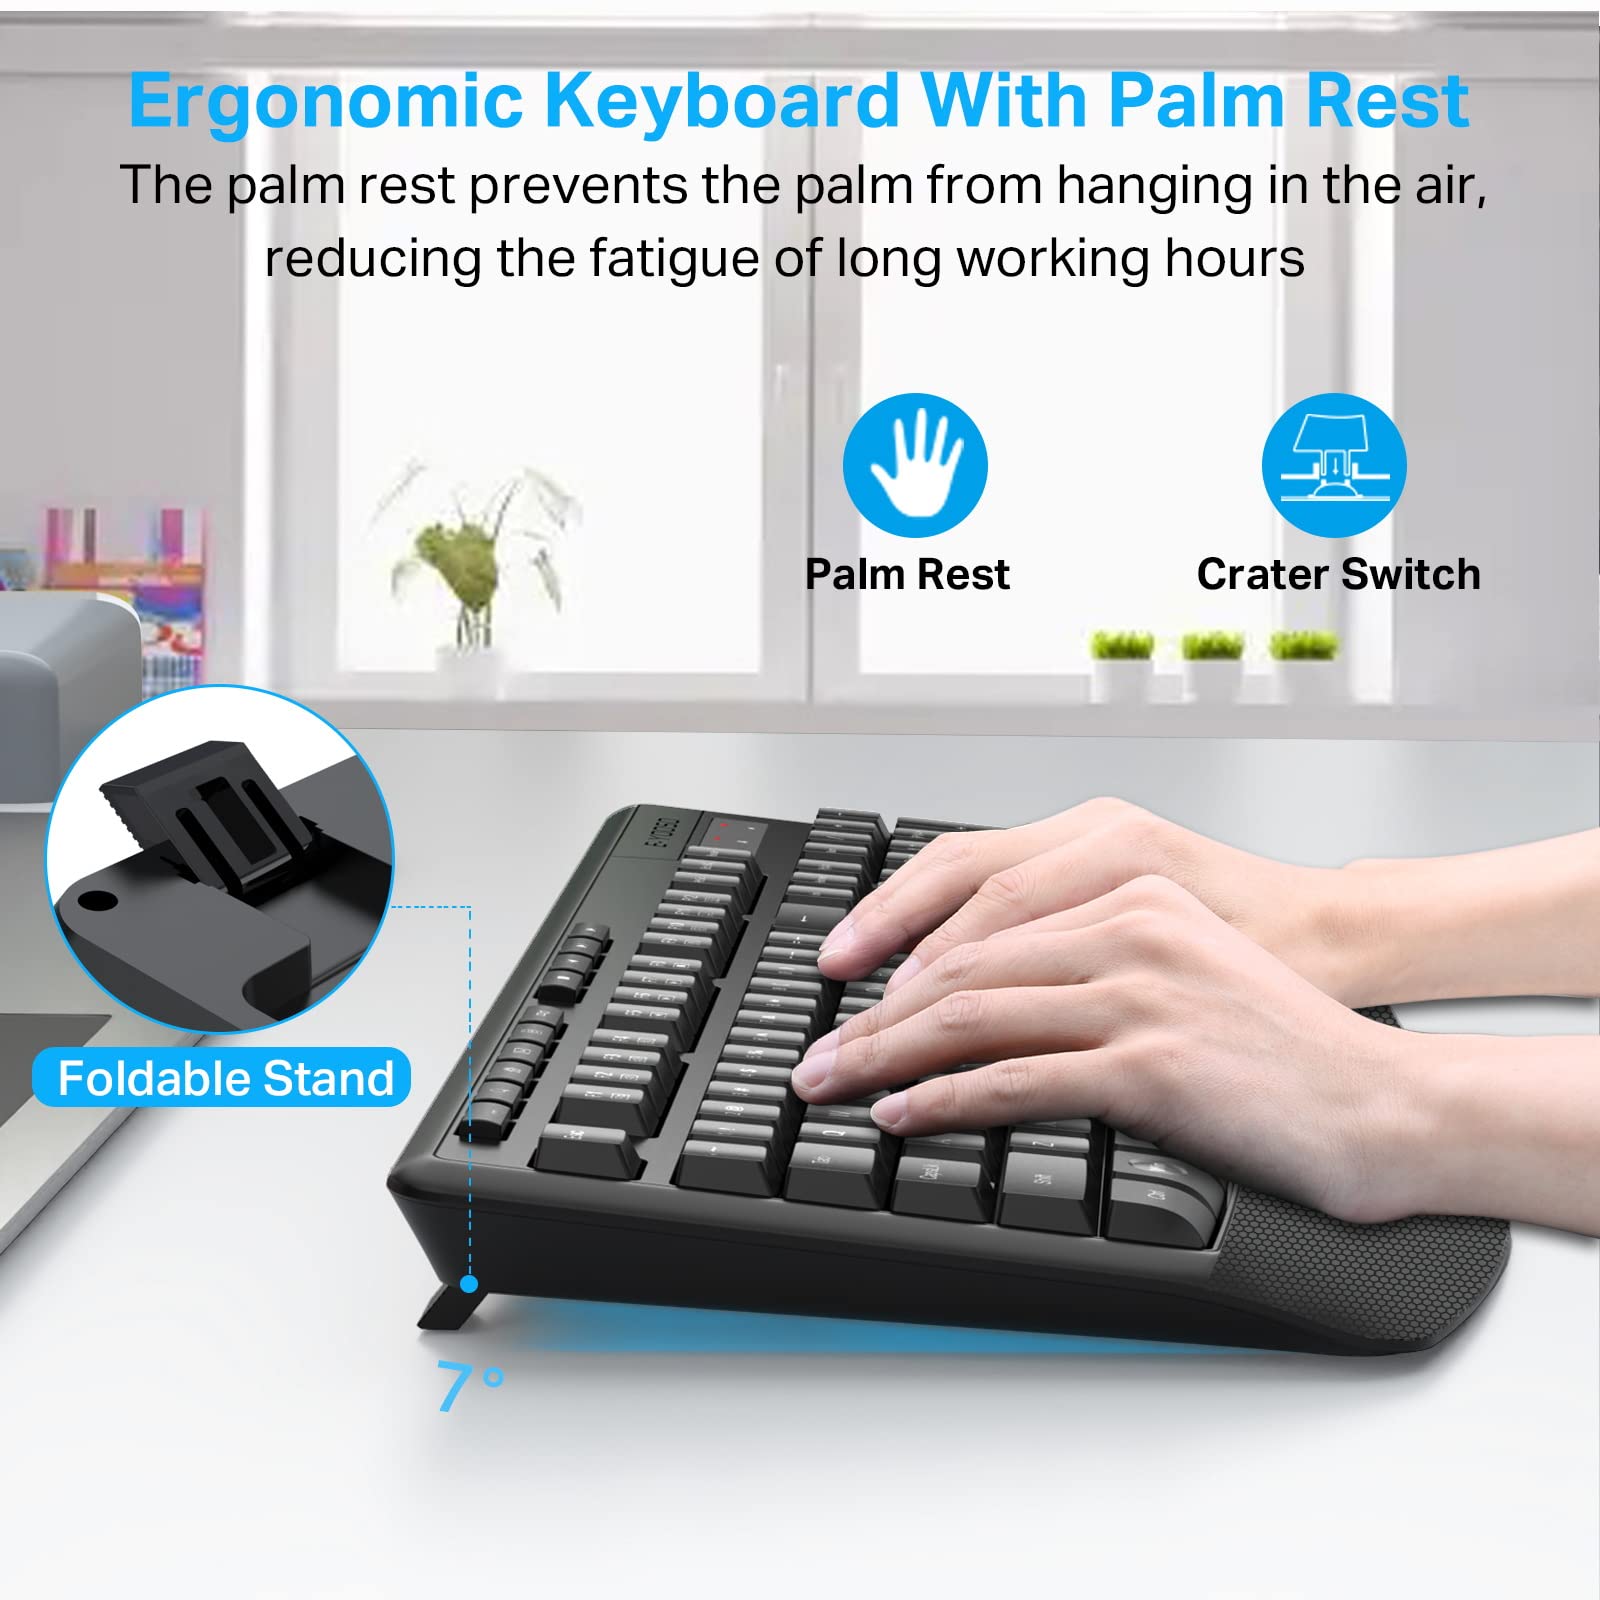 اللاسلكية لوحة المفاتيح والفأرة ، e-yoso 2.4G كامل الحجم لوحة المفاتيح المريحة ، مع وسادة النخيل ، ويندوز ، ماك